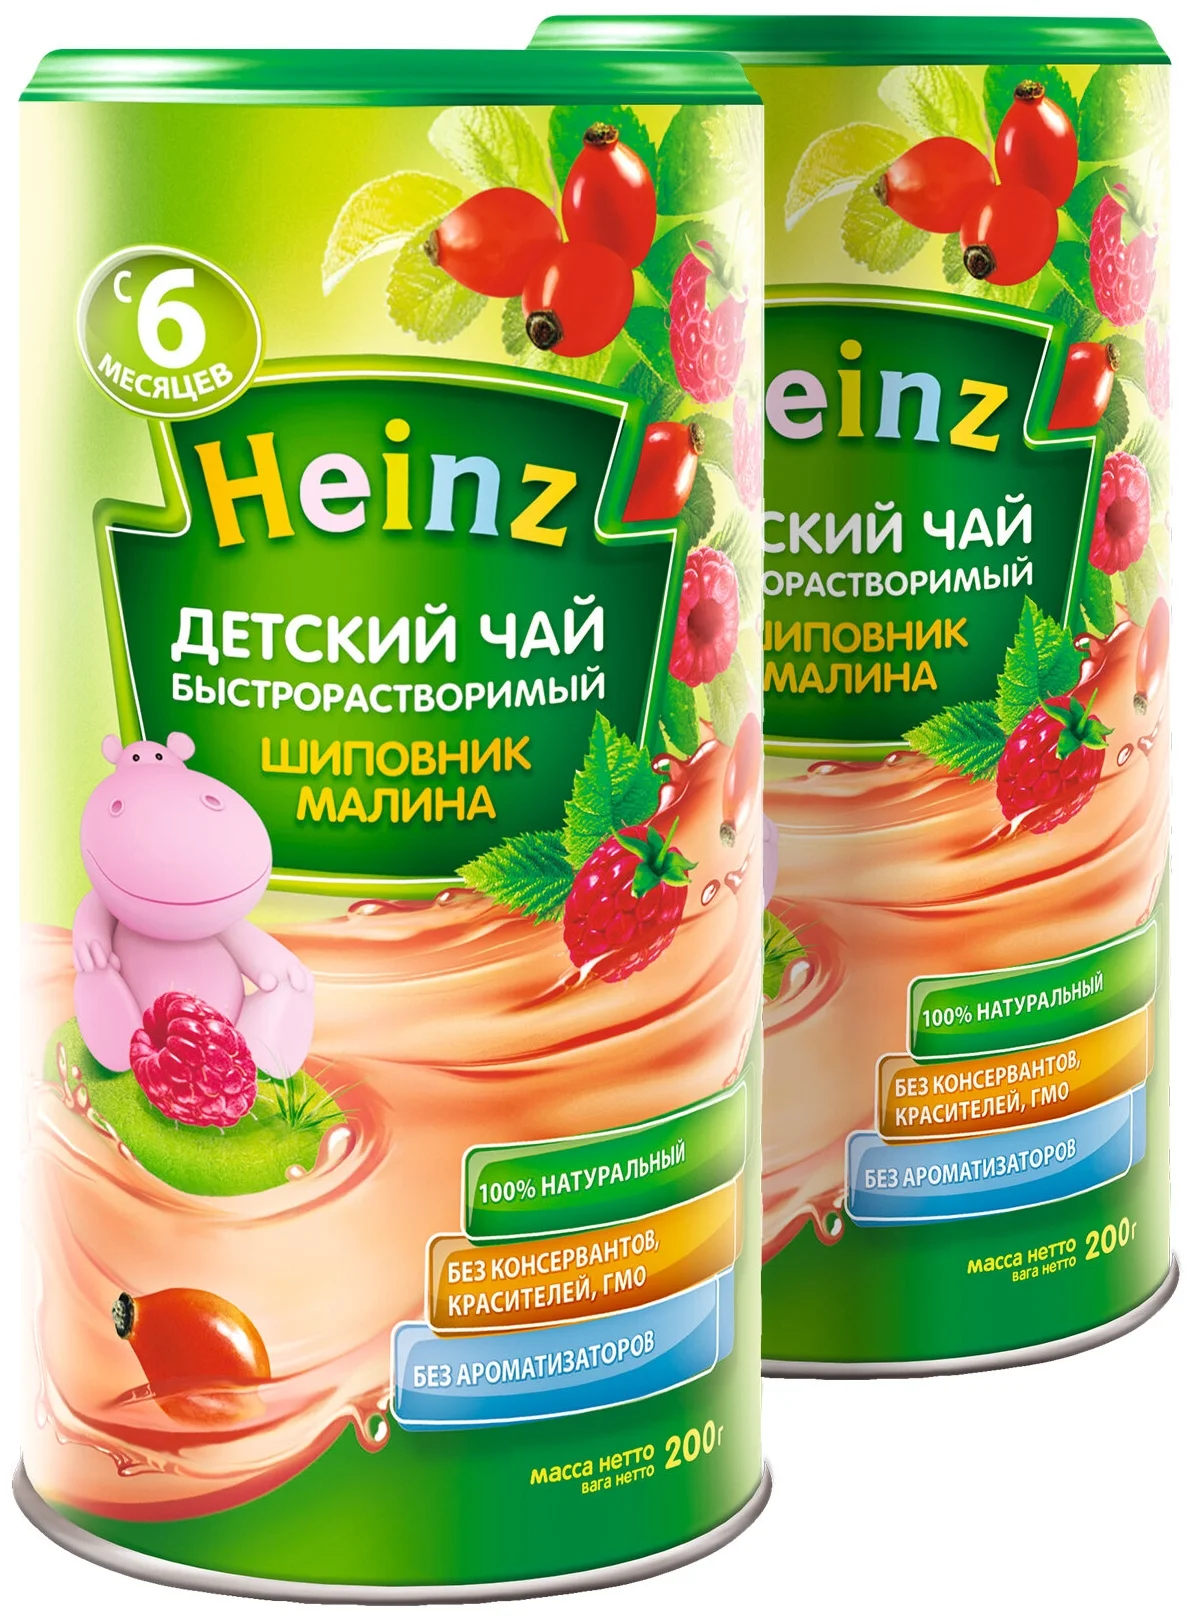 Heinz "Шиповник-малина" - состав: сахароза, декстроза, экстракт гибискуса, экстракт шиповника, фруктовый порошок малины (мальтодекстрин, концентрированный сок малины), регулятор кислотности (лимонная кислота)